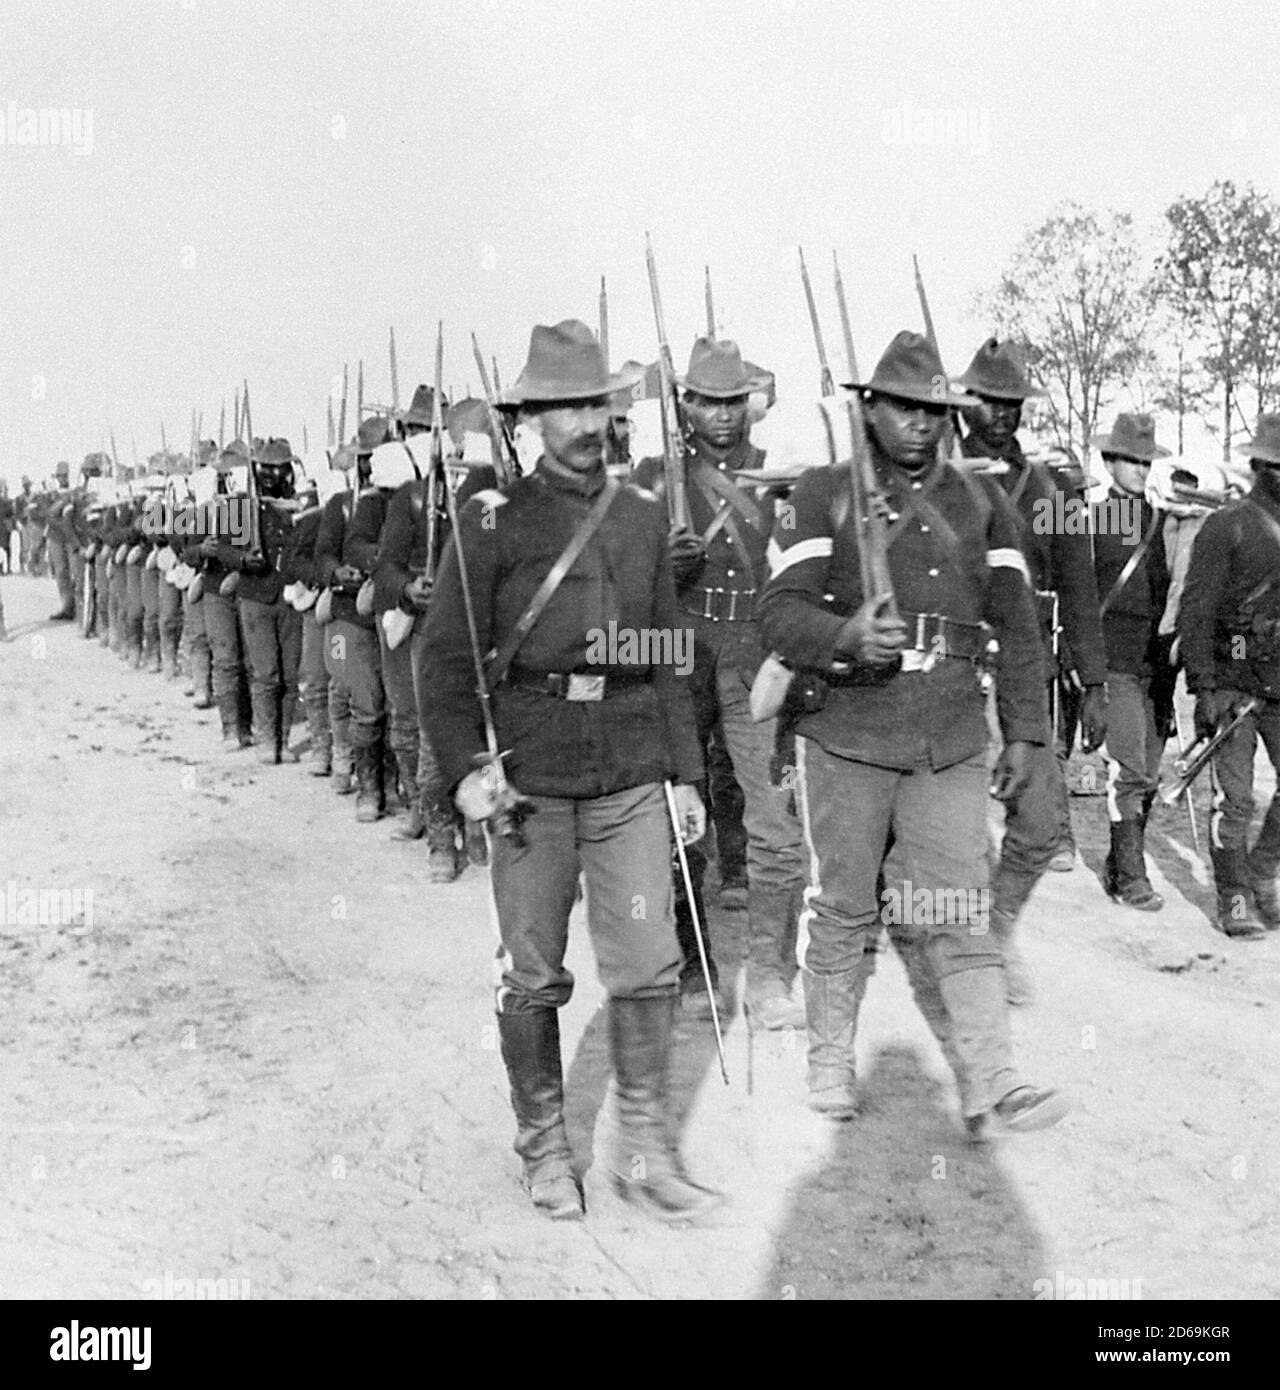 Soldats de Buffalo de la 24e infanterie américaine à Cuba pendant la guerre américaine espagnole, vers 1898 Banque D'Images